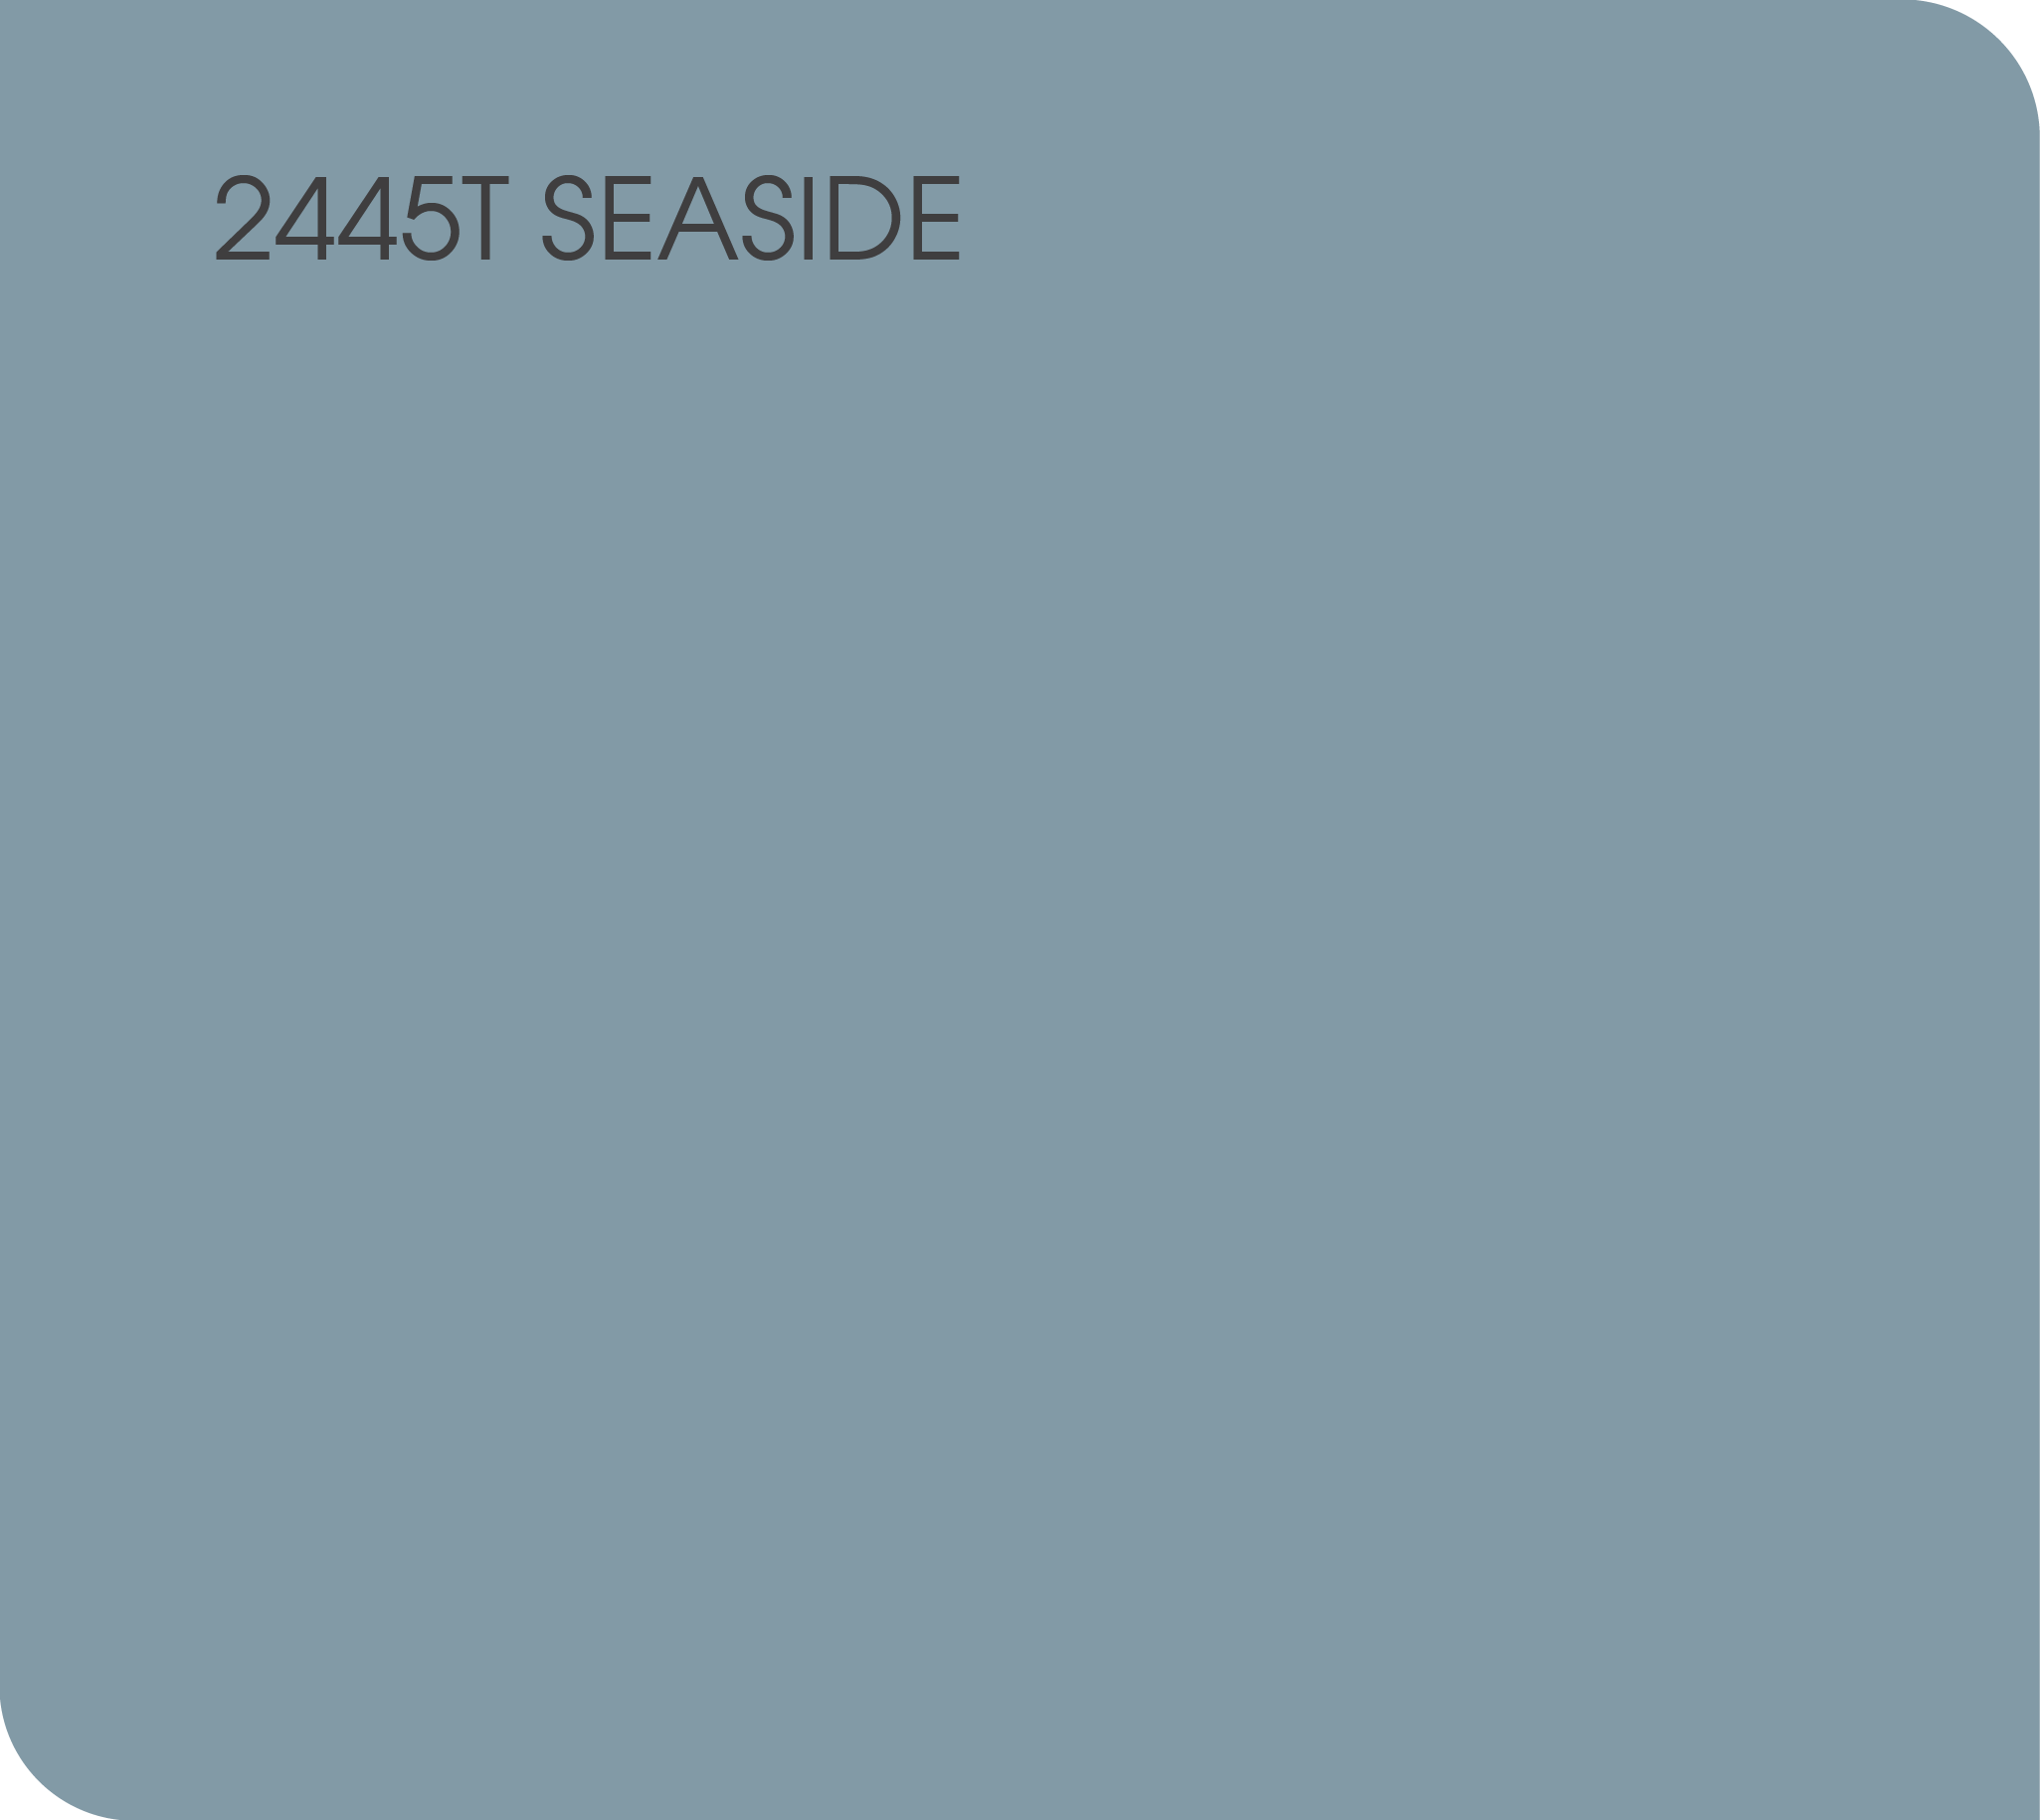 2445T seaside